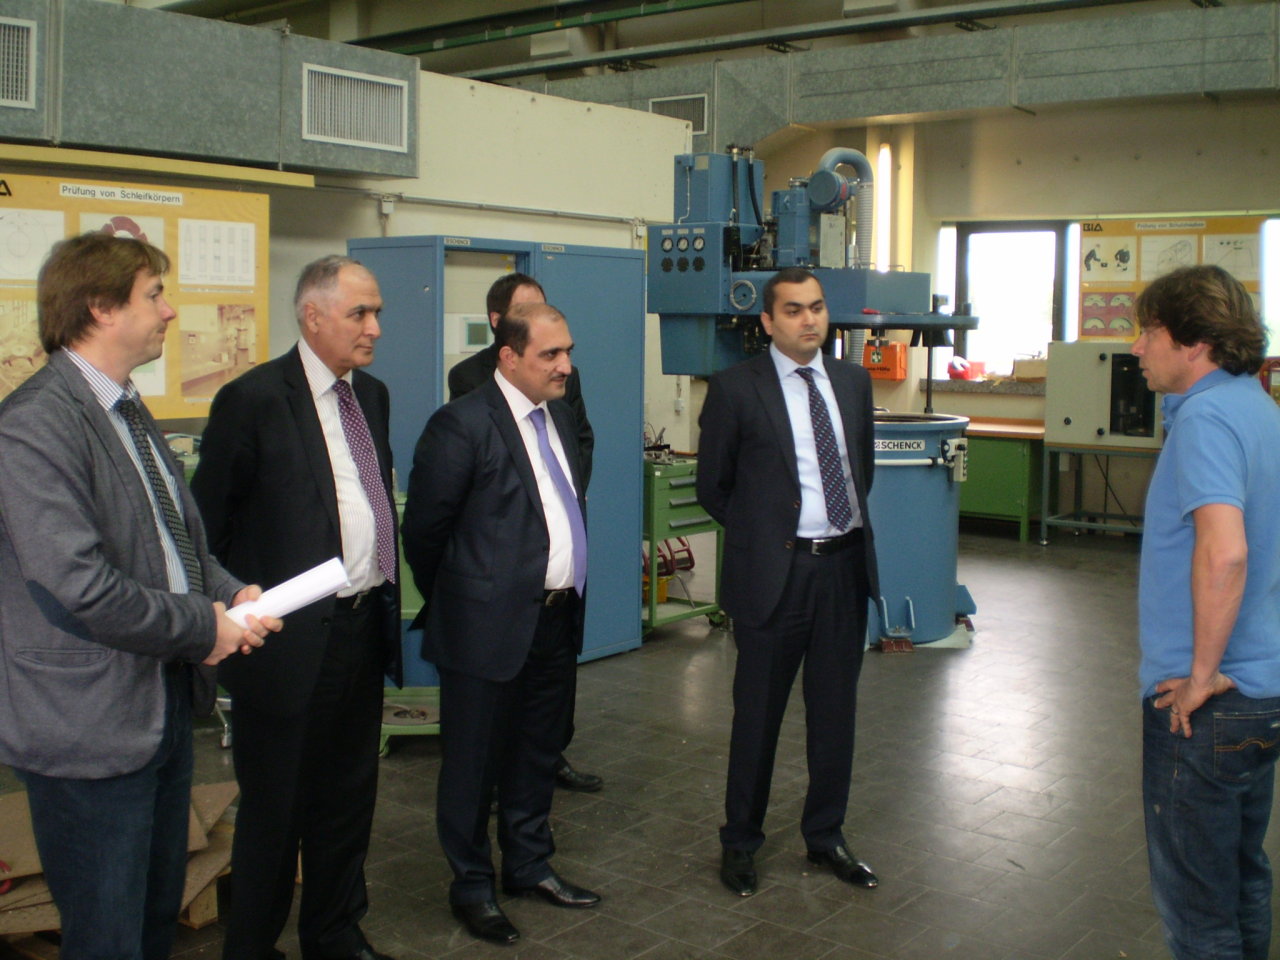 Азербайджан изучает германский опыт в сфере охраны труда(ФОТО)